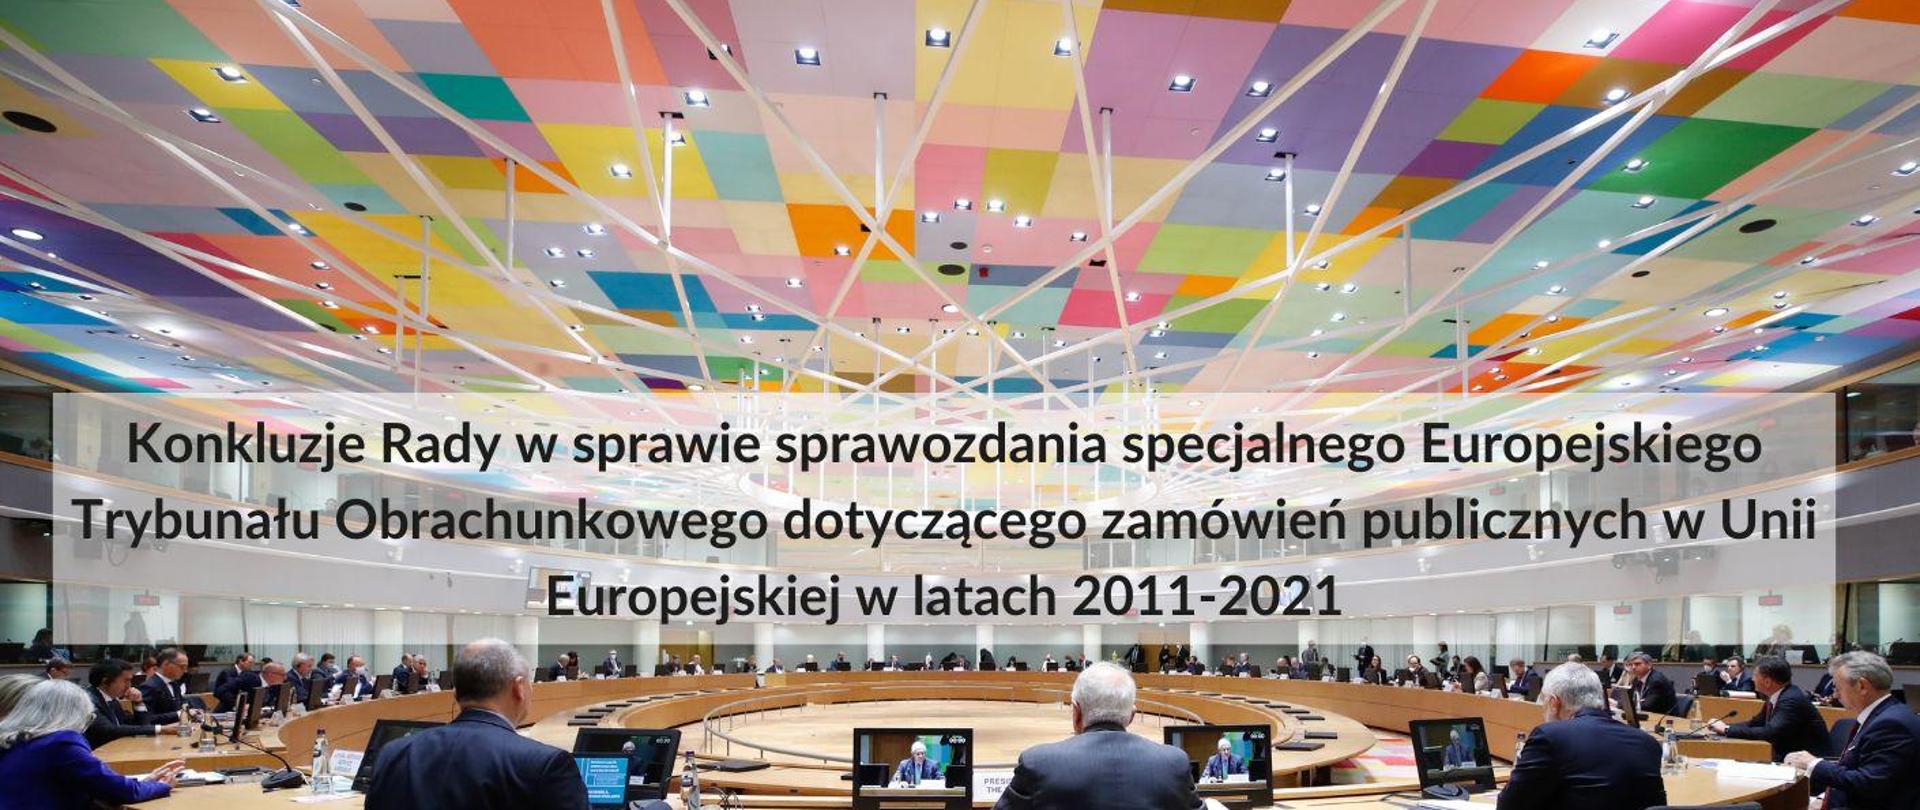 Konkluzje Rady w sprawie sprawozdania specjalnego Europejskiego Trybunału Obrachunkowego dotyczącego zamówień publicznych w Unii Europejskiej w latach 2011-2021